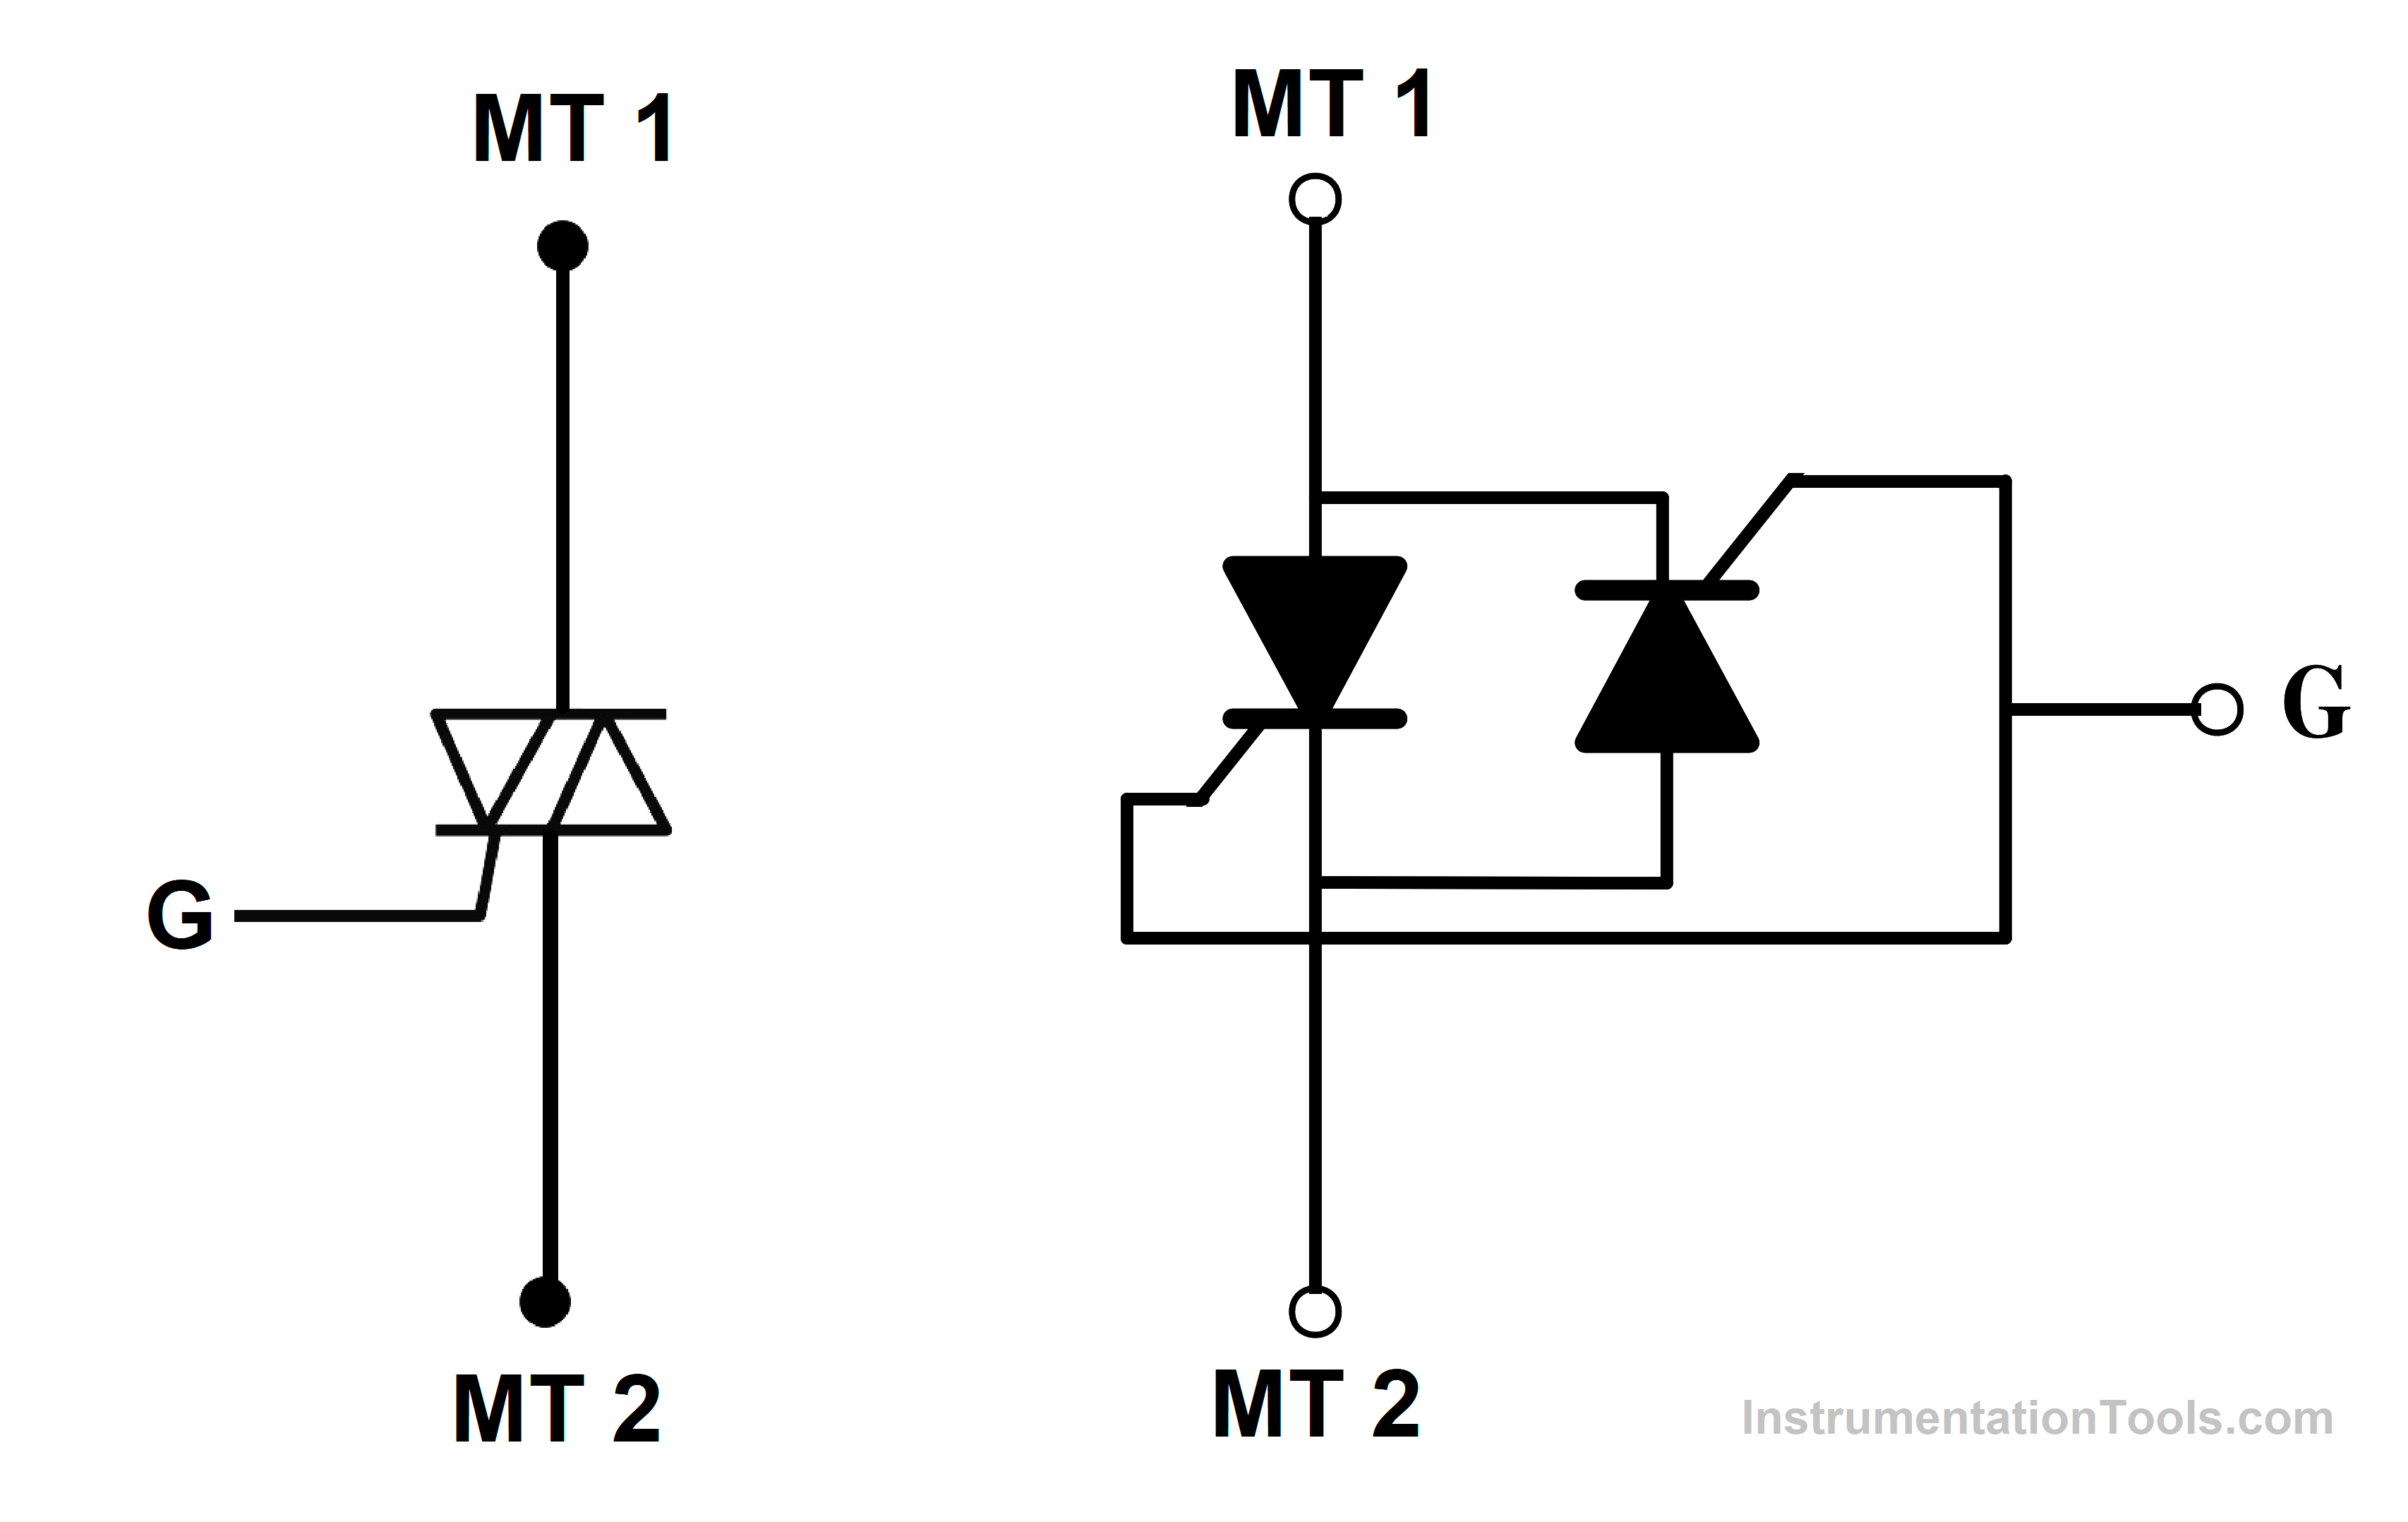 TRIAC Symbol and Equivalent Circuit